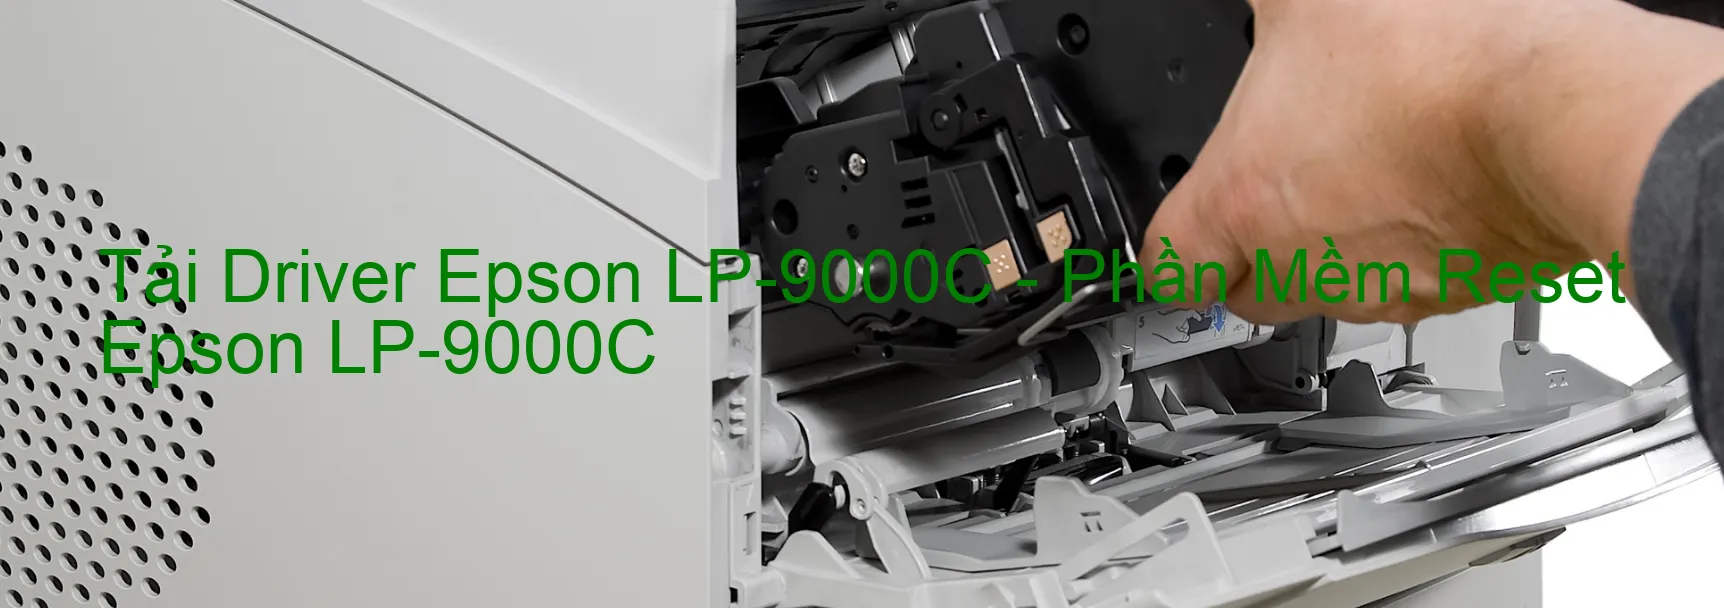 Driver Epson LP-9000C, Phần Mềm Reset Epson LP-9000C